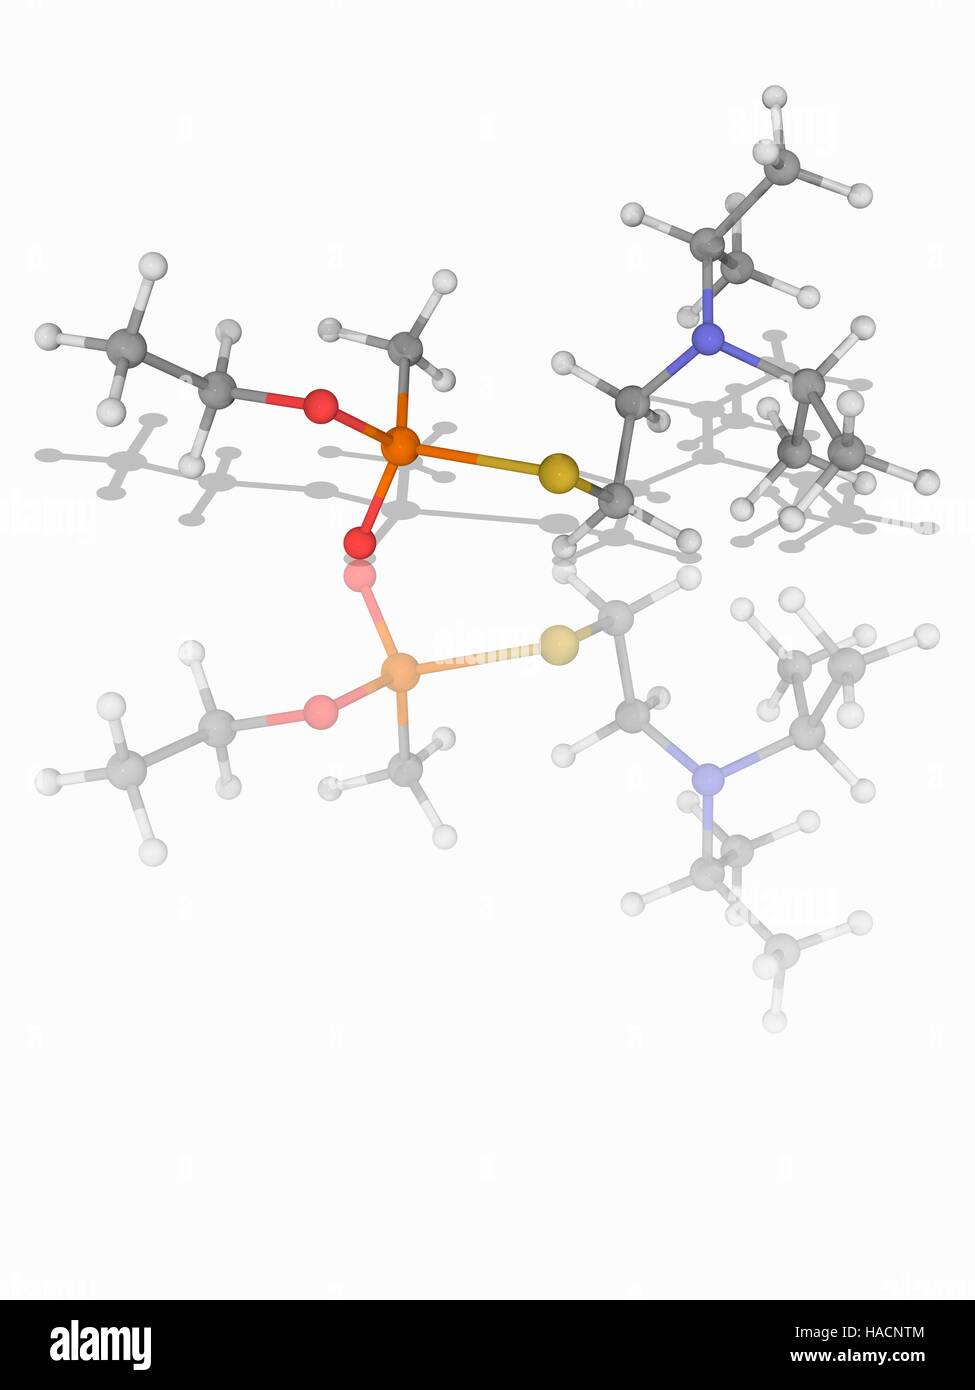 VX-Nervengas. Molekülmodell äußerst toxisches Nervengift VX (C11. H26. N.O2. PS), als eine Massenvernichtungswaffe in chemische Kampfstoffe verwendet. Atome als Kugeln dargestellt werden und sind farblich gekennzeichnet: Kohlenstoff (grau), Wasserstoff (weiß), Stickstoff (blau), Sauerstoff (rot), Schwefel (gelb) und Phosphor (orange). Abbildung. Stockfoto